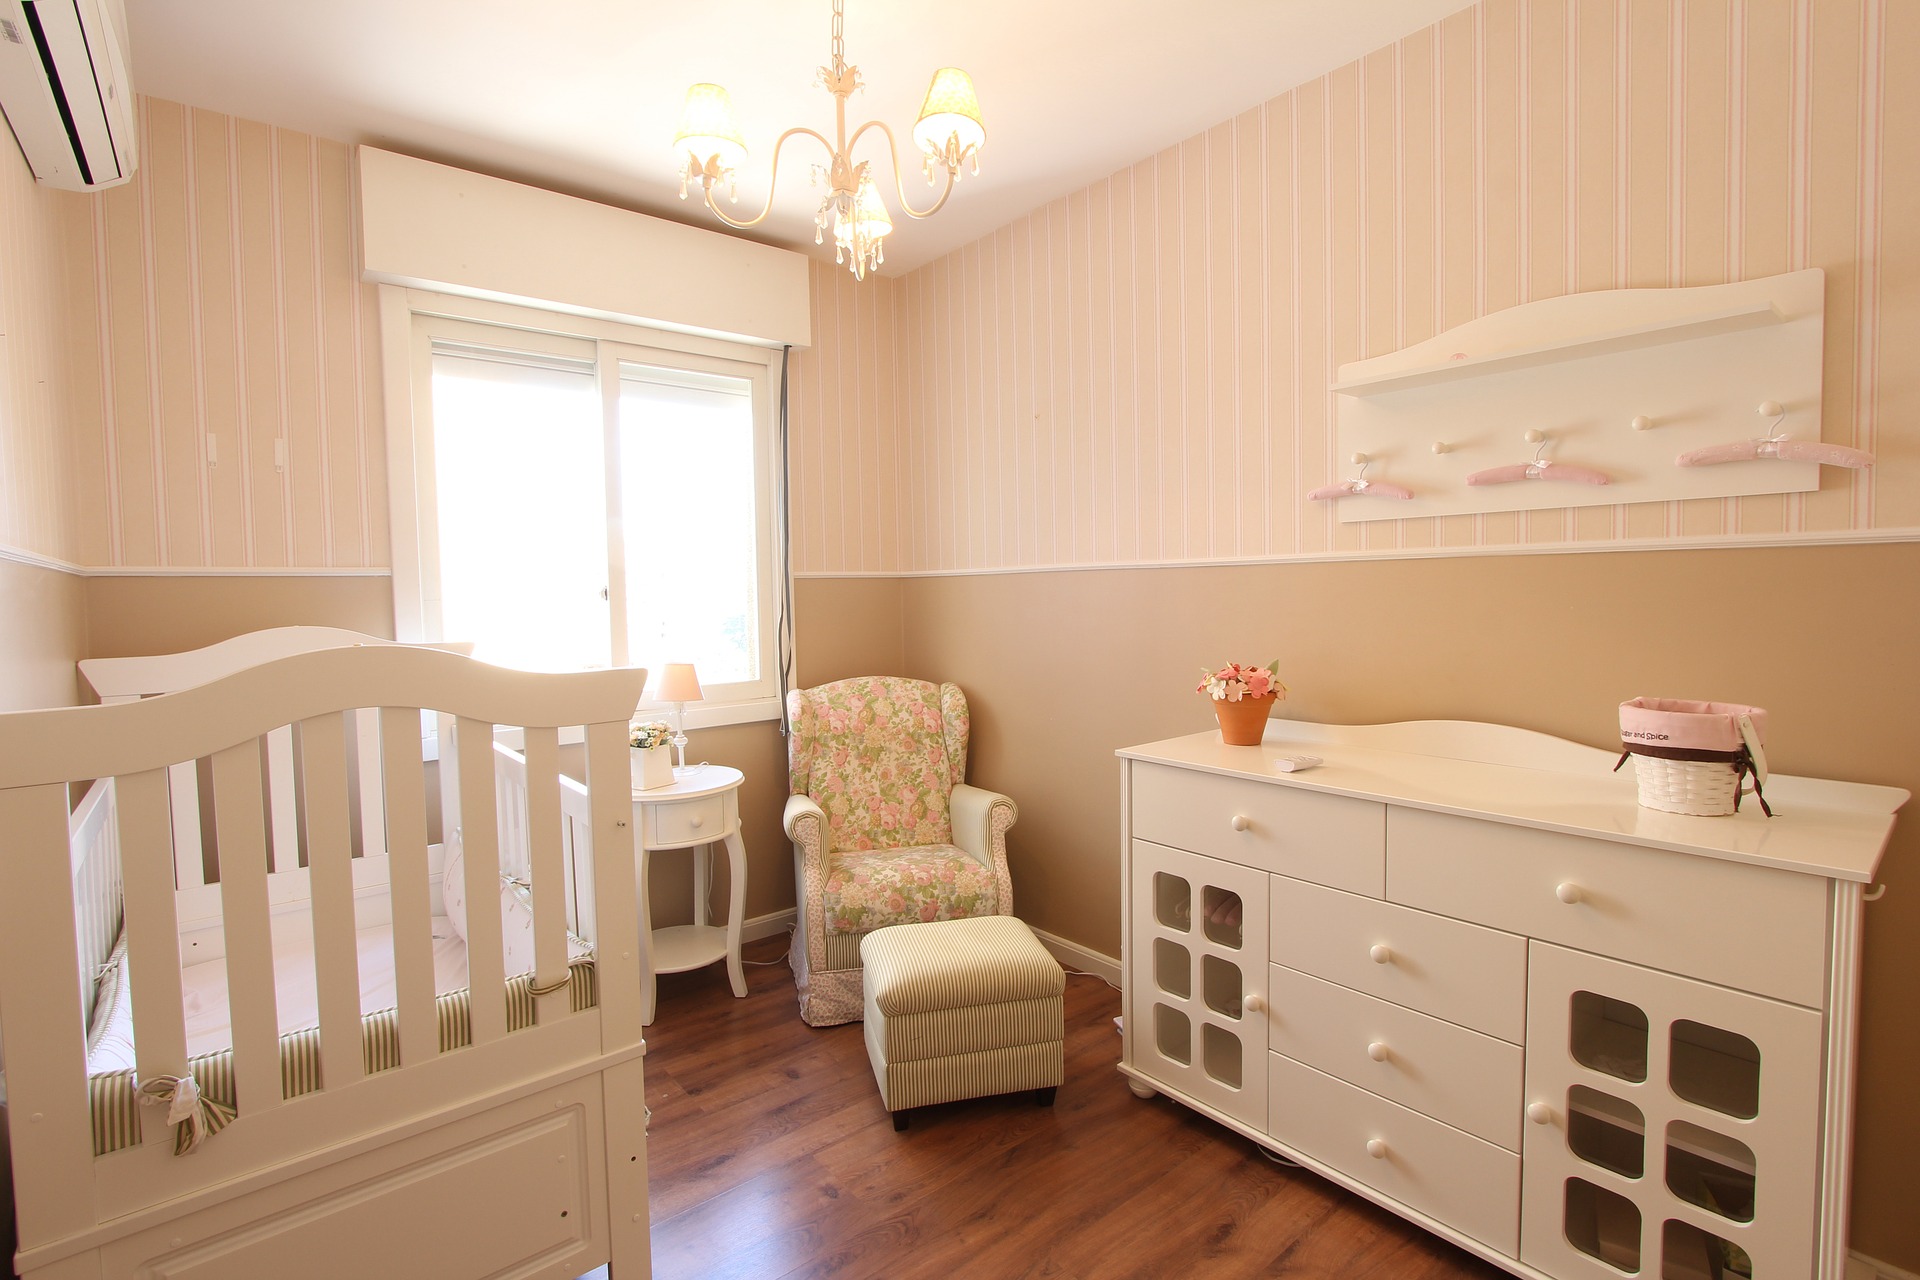 חדר תינוקות מעוצב שיתאים לכם לכמה שנים